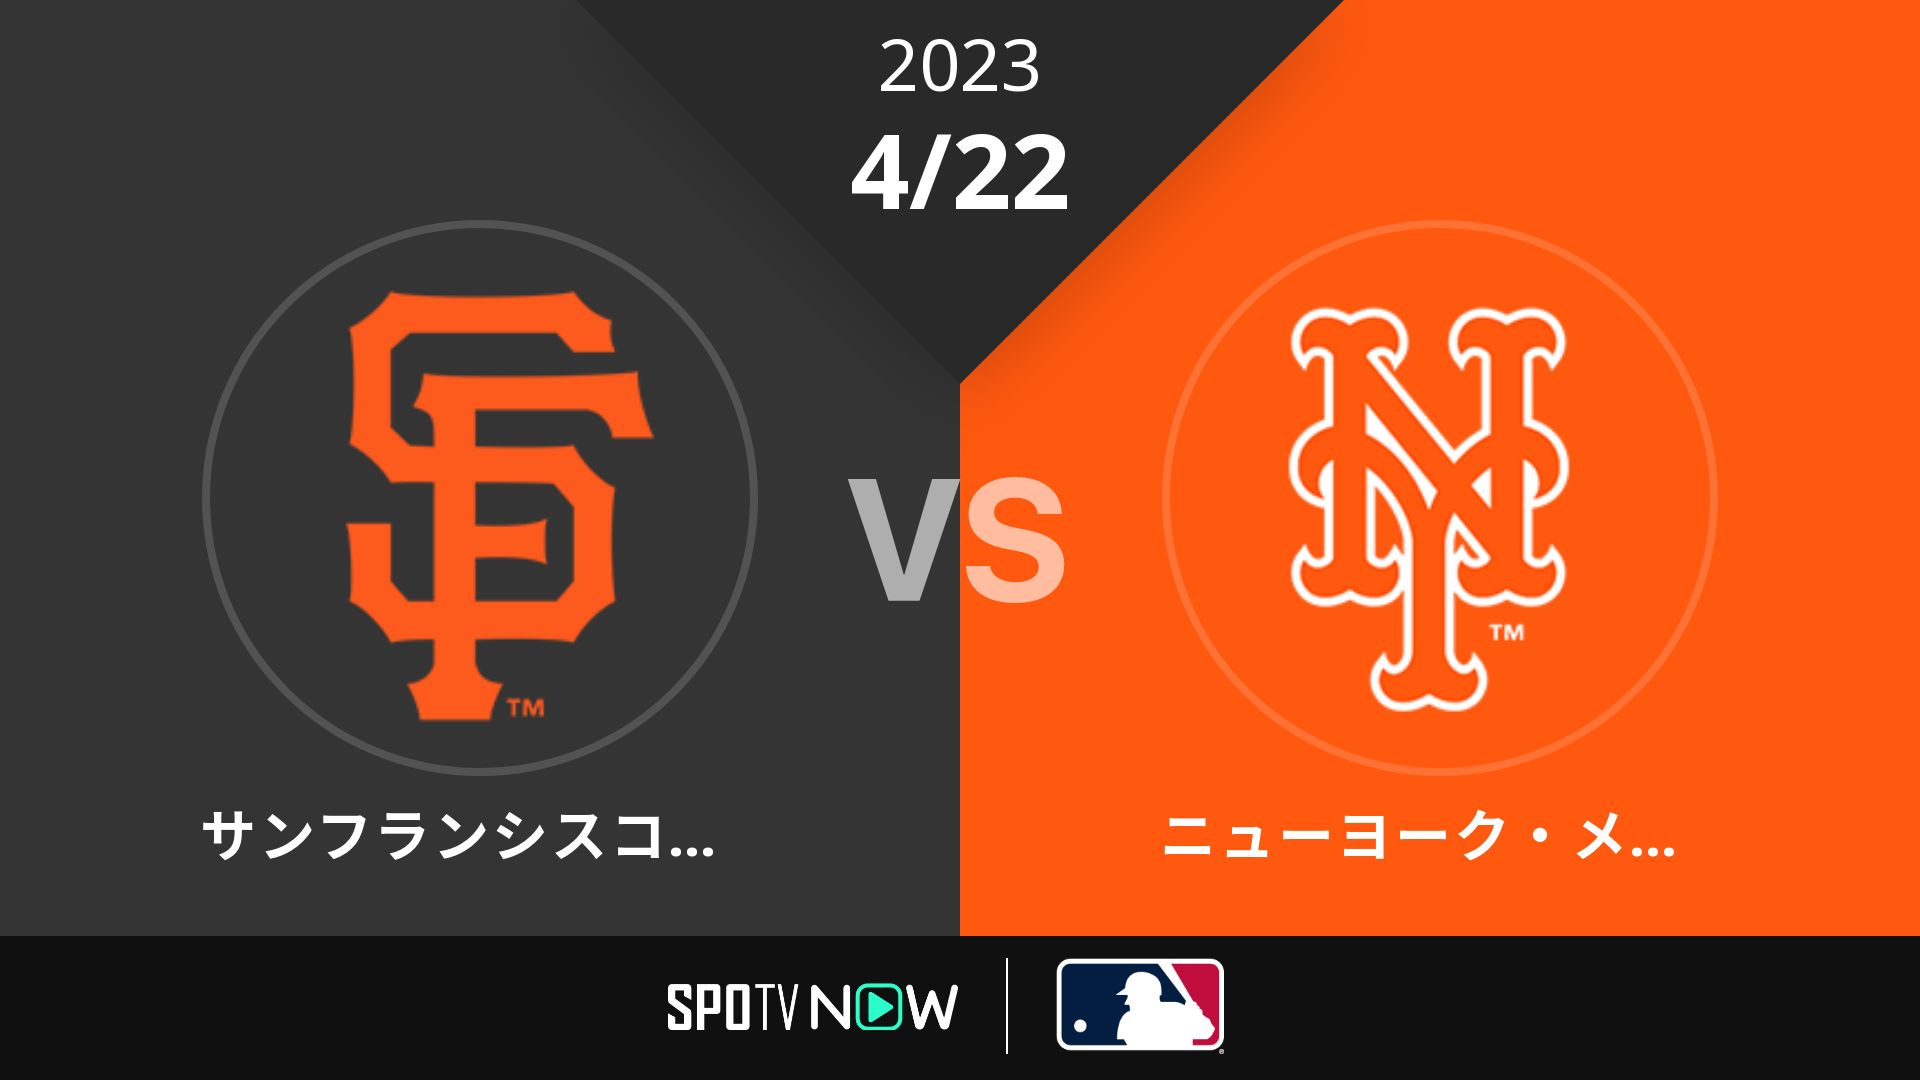 2023/4/22 ジャイアンツ vs メッツ [MLB]